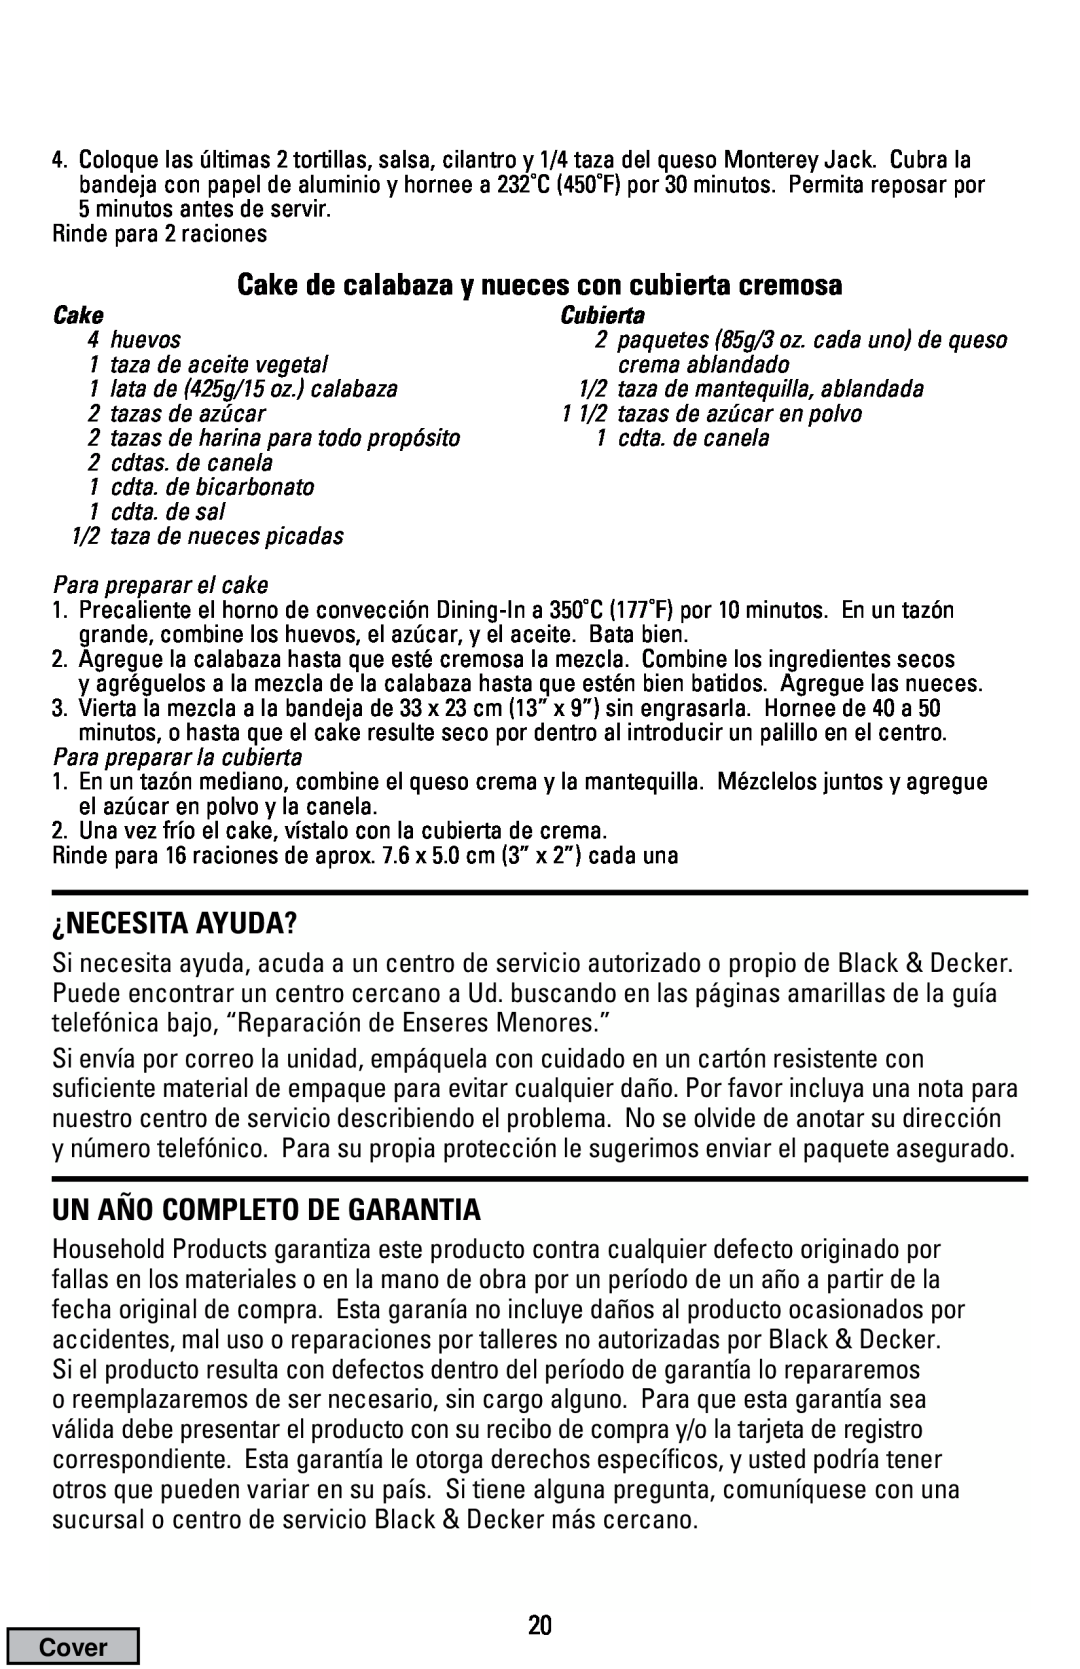 Black & Decker CTO9000 manual Cake de calabaza y nueces con cubierta cremosa, ¿Necesita Ayuda?, Un Año Completo De Garantia 